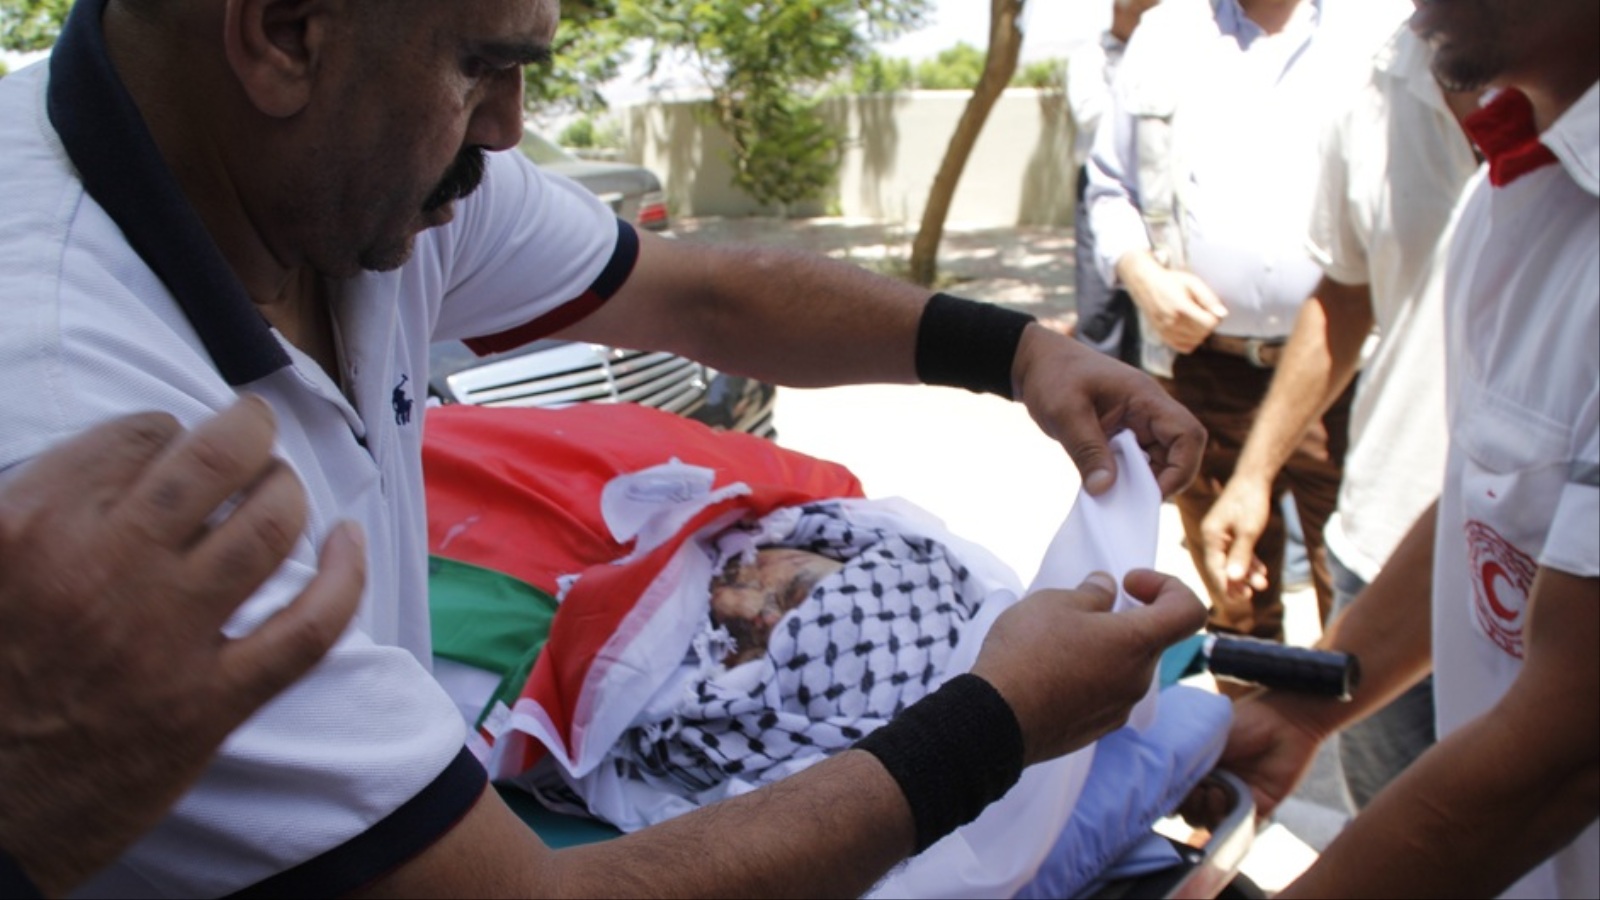 ‪ضابط إسعاف يحاول تغطية الشهيد سعد دوابشة قبيل تشييعه‬  (الجزيرة نت)